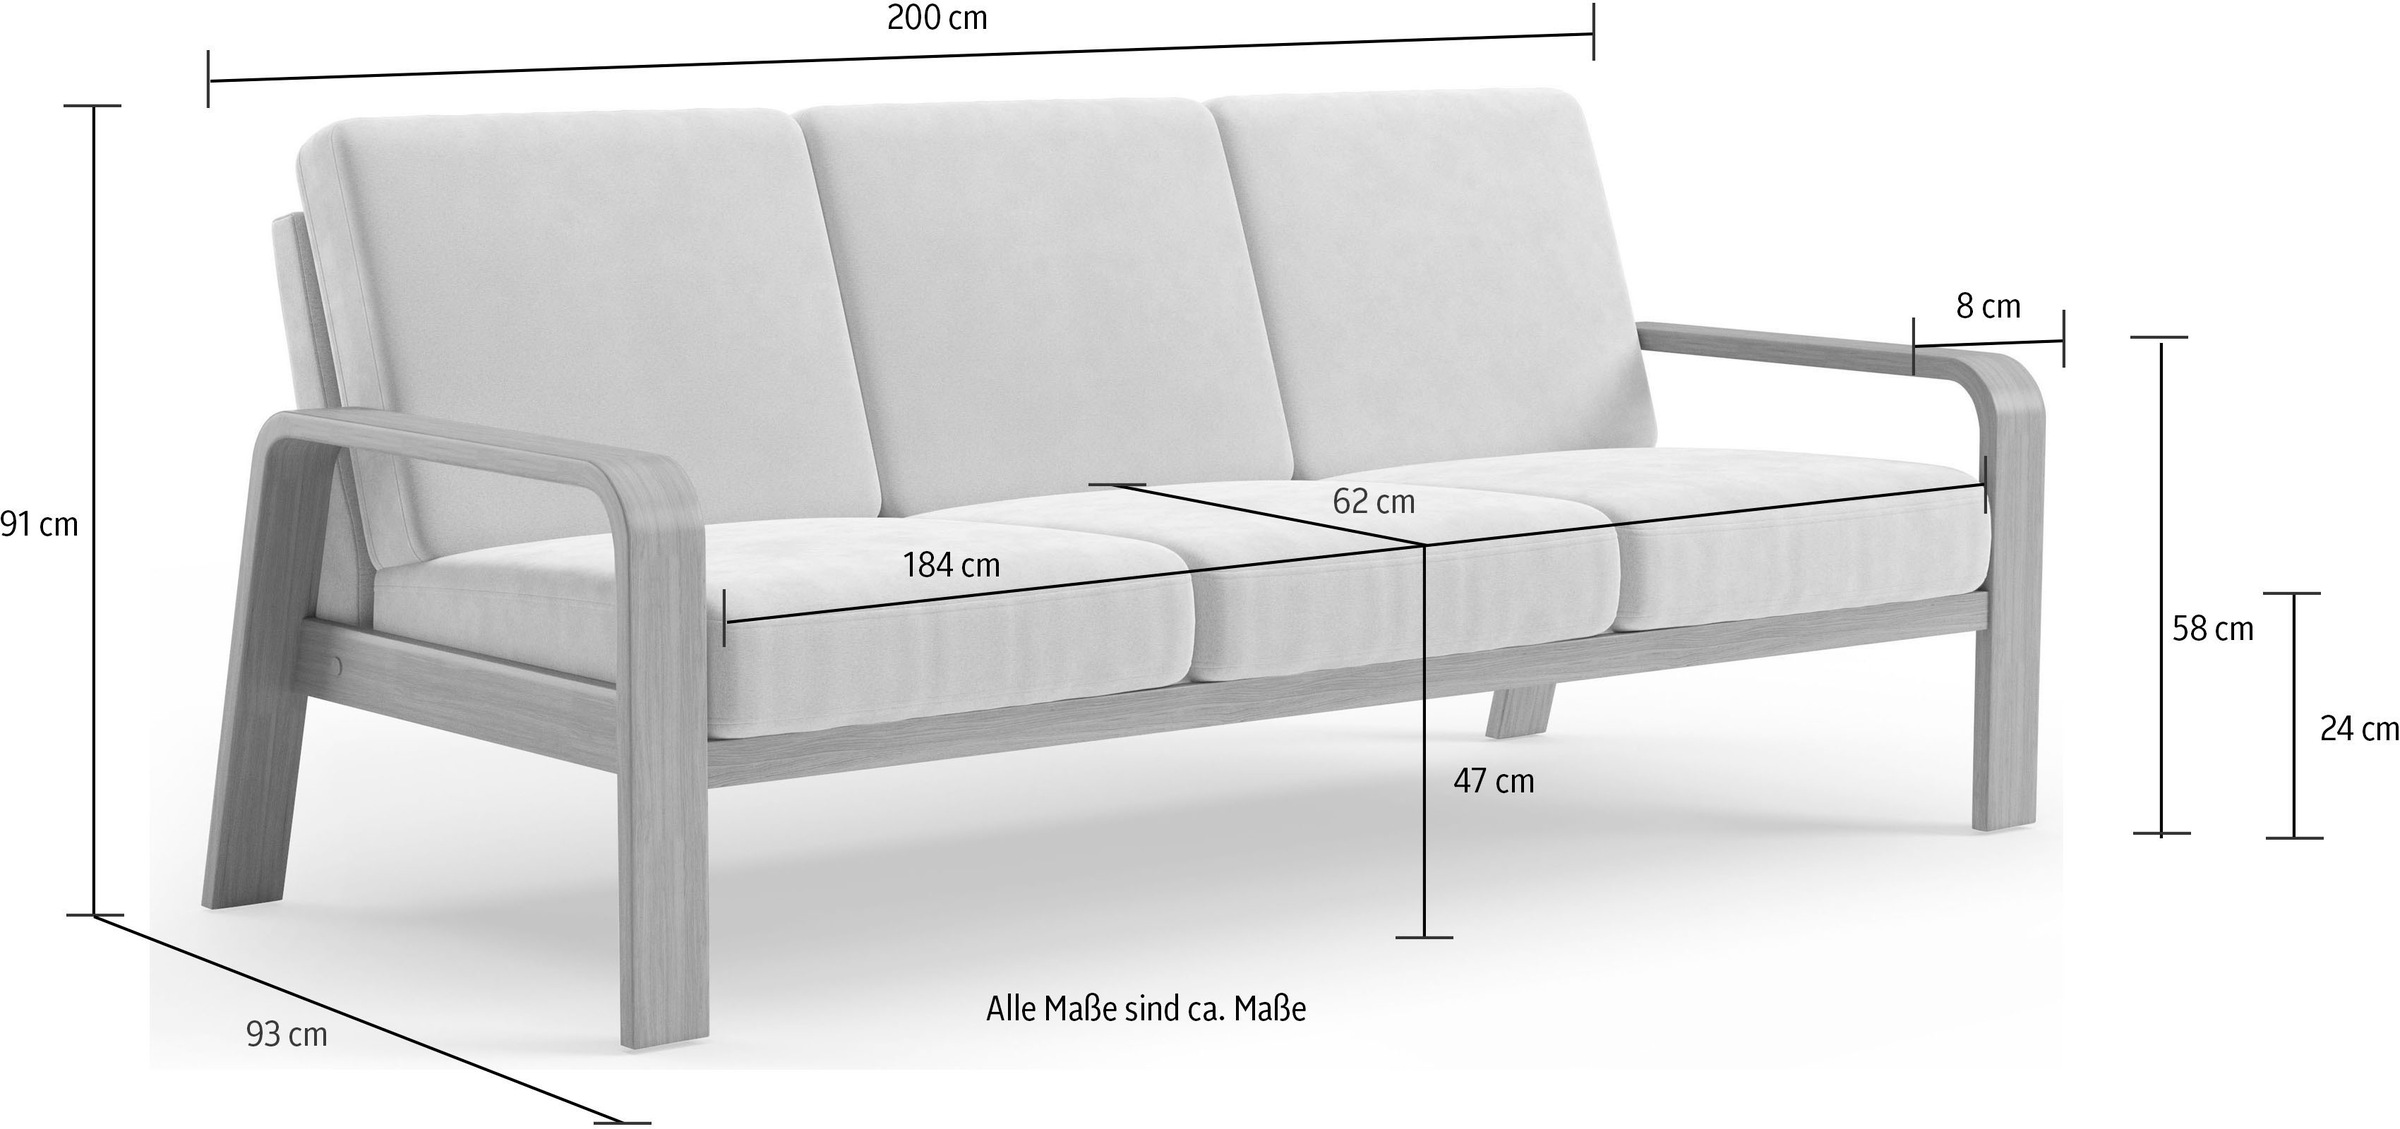 sit&more 3-Sitzer »Kolding«, Armlehnen aus Buchenholz in natur, verschiedene Bezüge und Farben